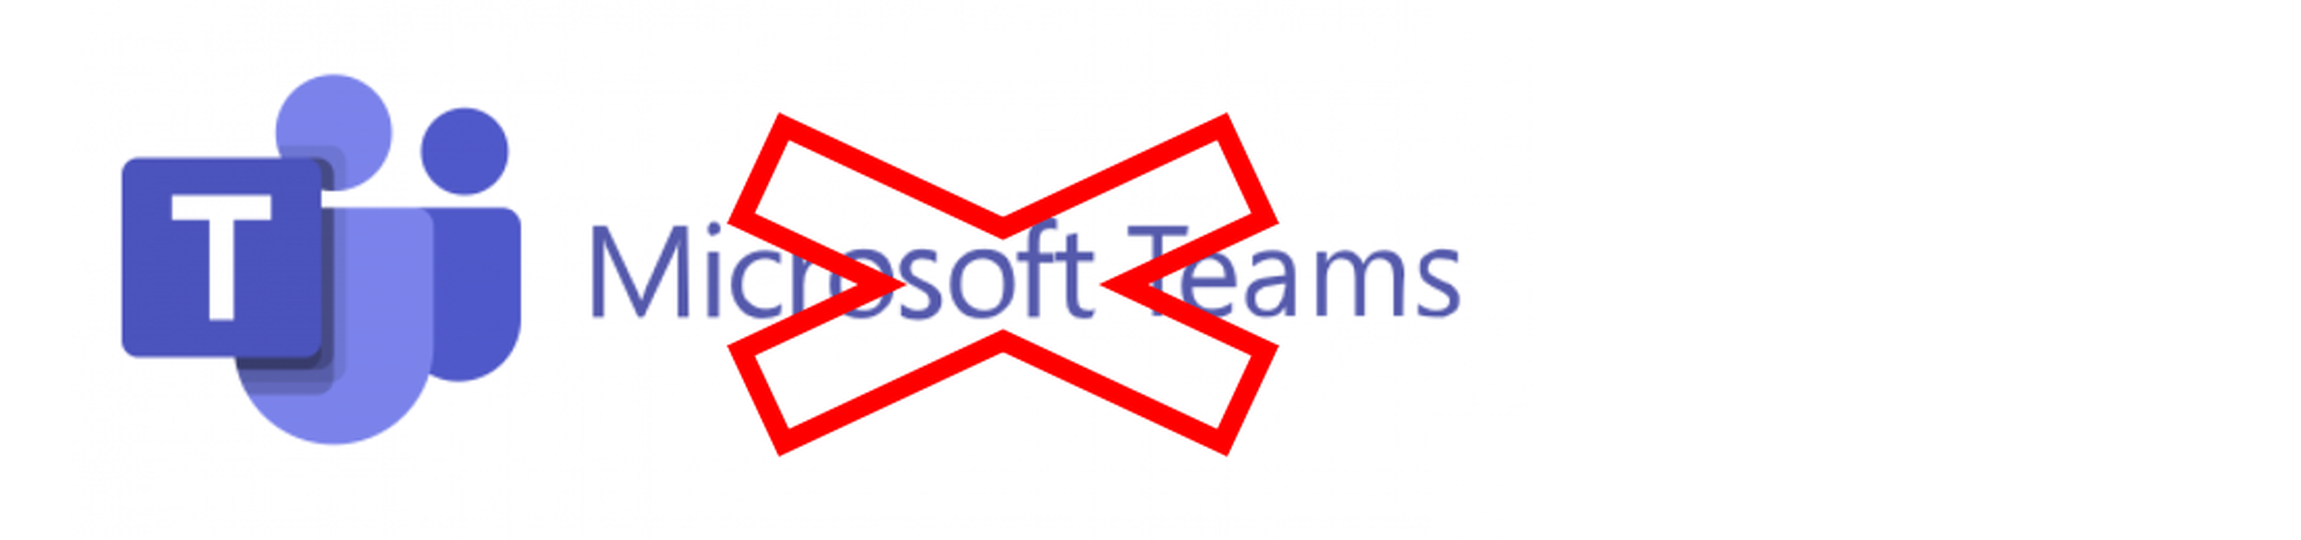 Microsoft breidt de verwijdering van Teams uit Microsoft 365 en Office 365 uit naar alle klanten